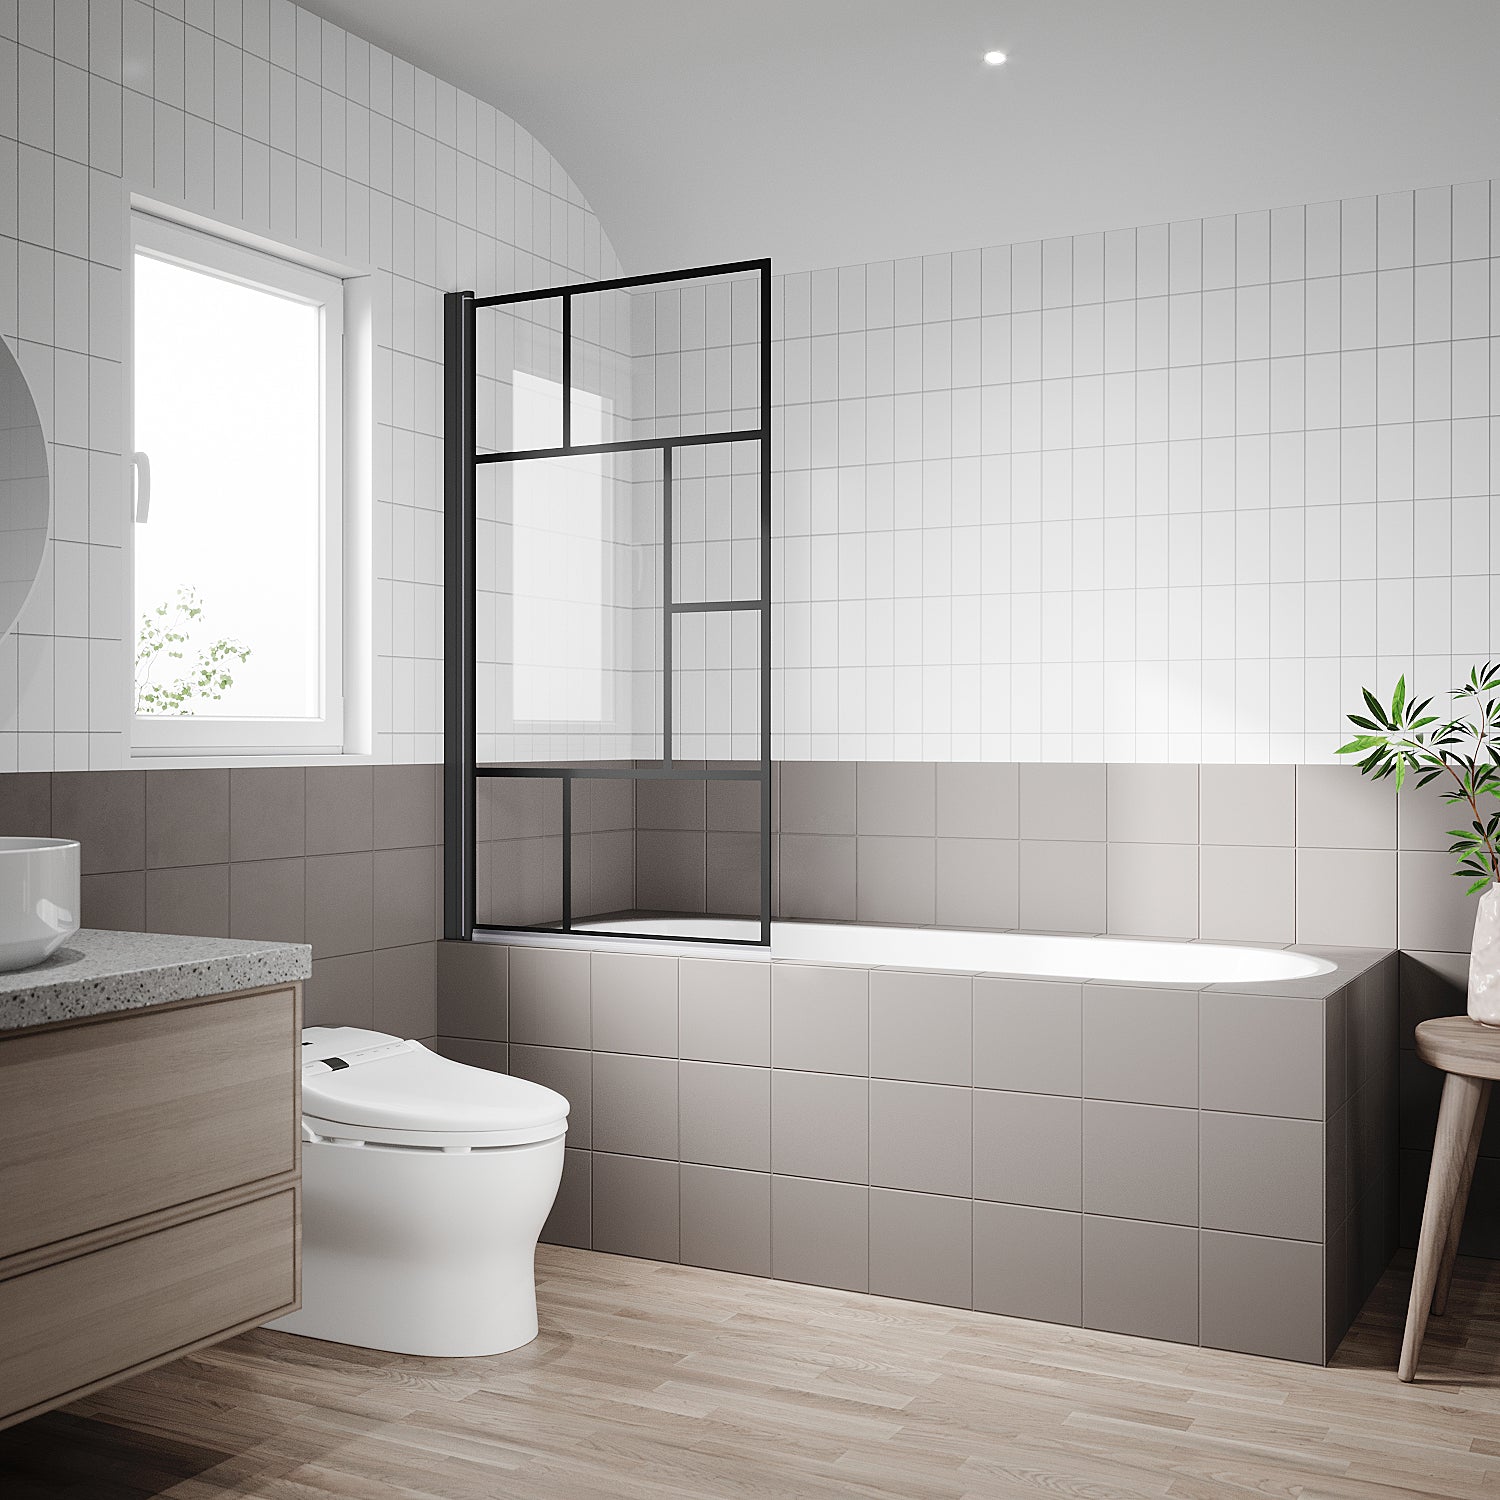 Image of SONNI Duschwand für Badewanne mit schwarzem Gitterdesign NANO-GLAS Badewannenaufsatz faltbar 80x140 cm(BxH) Duschabtrennung Badewanne